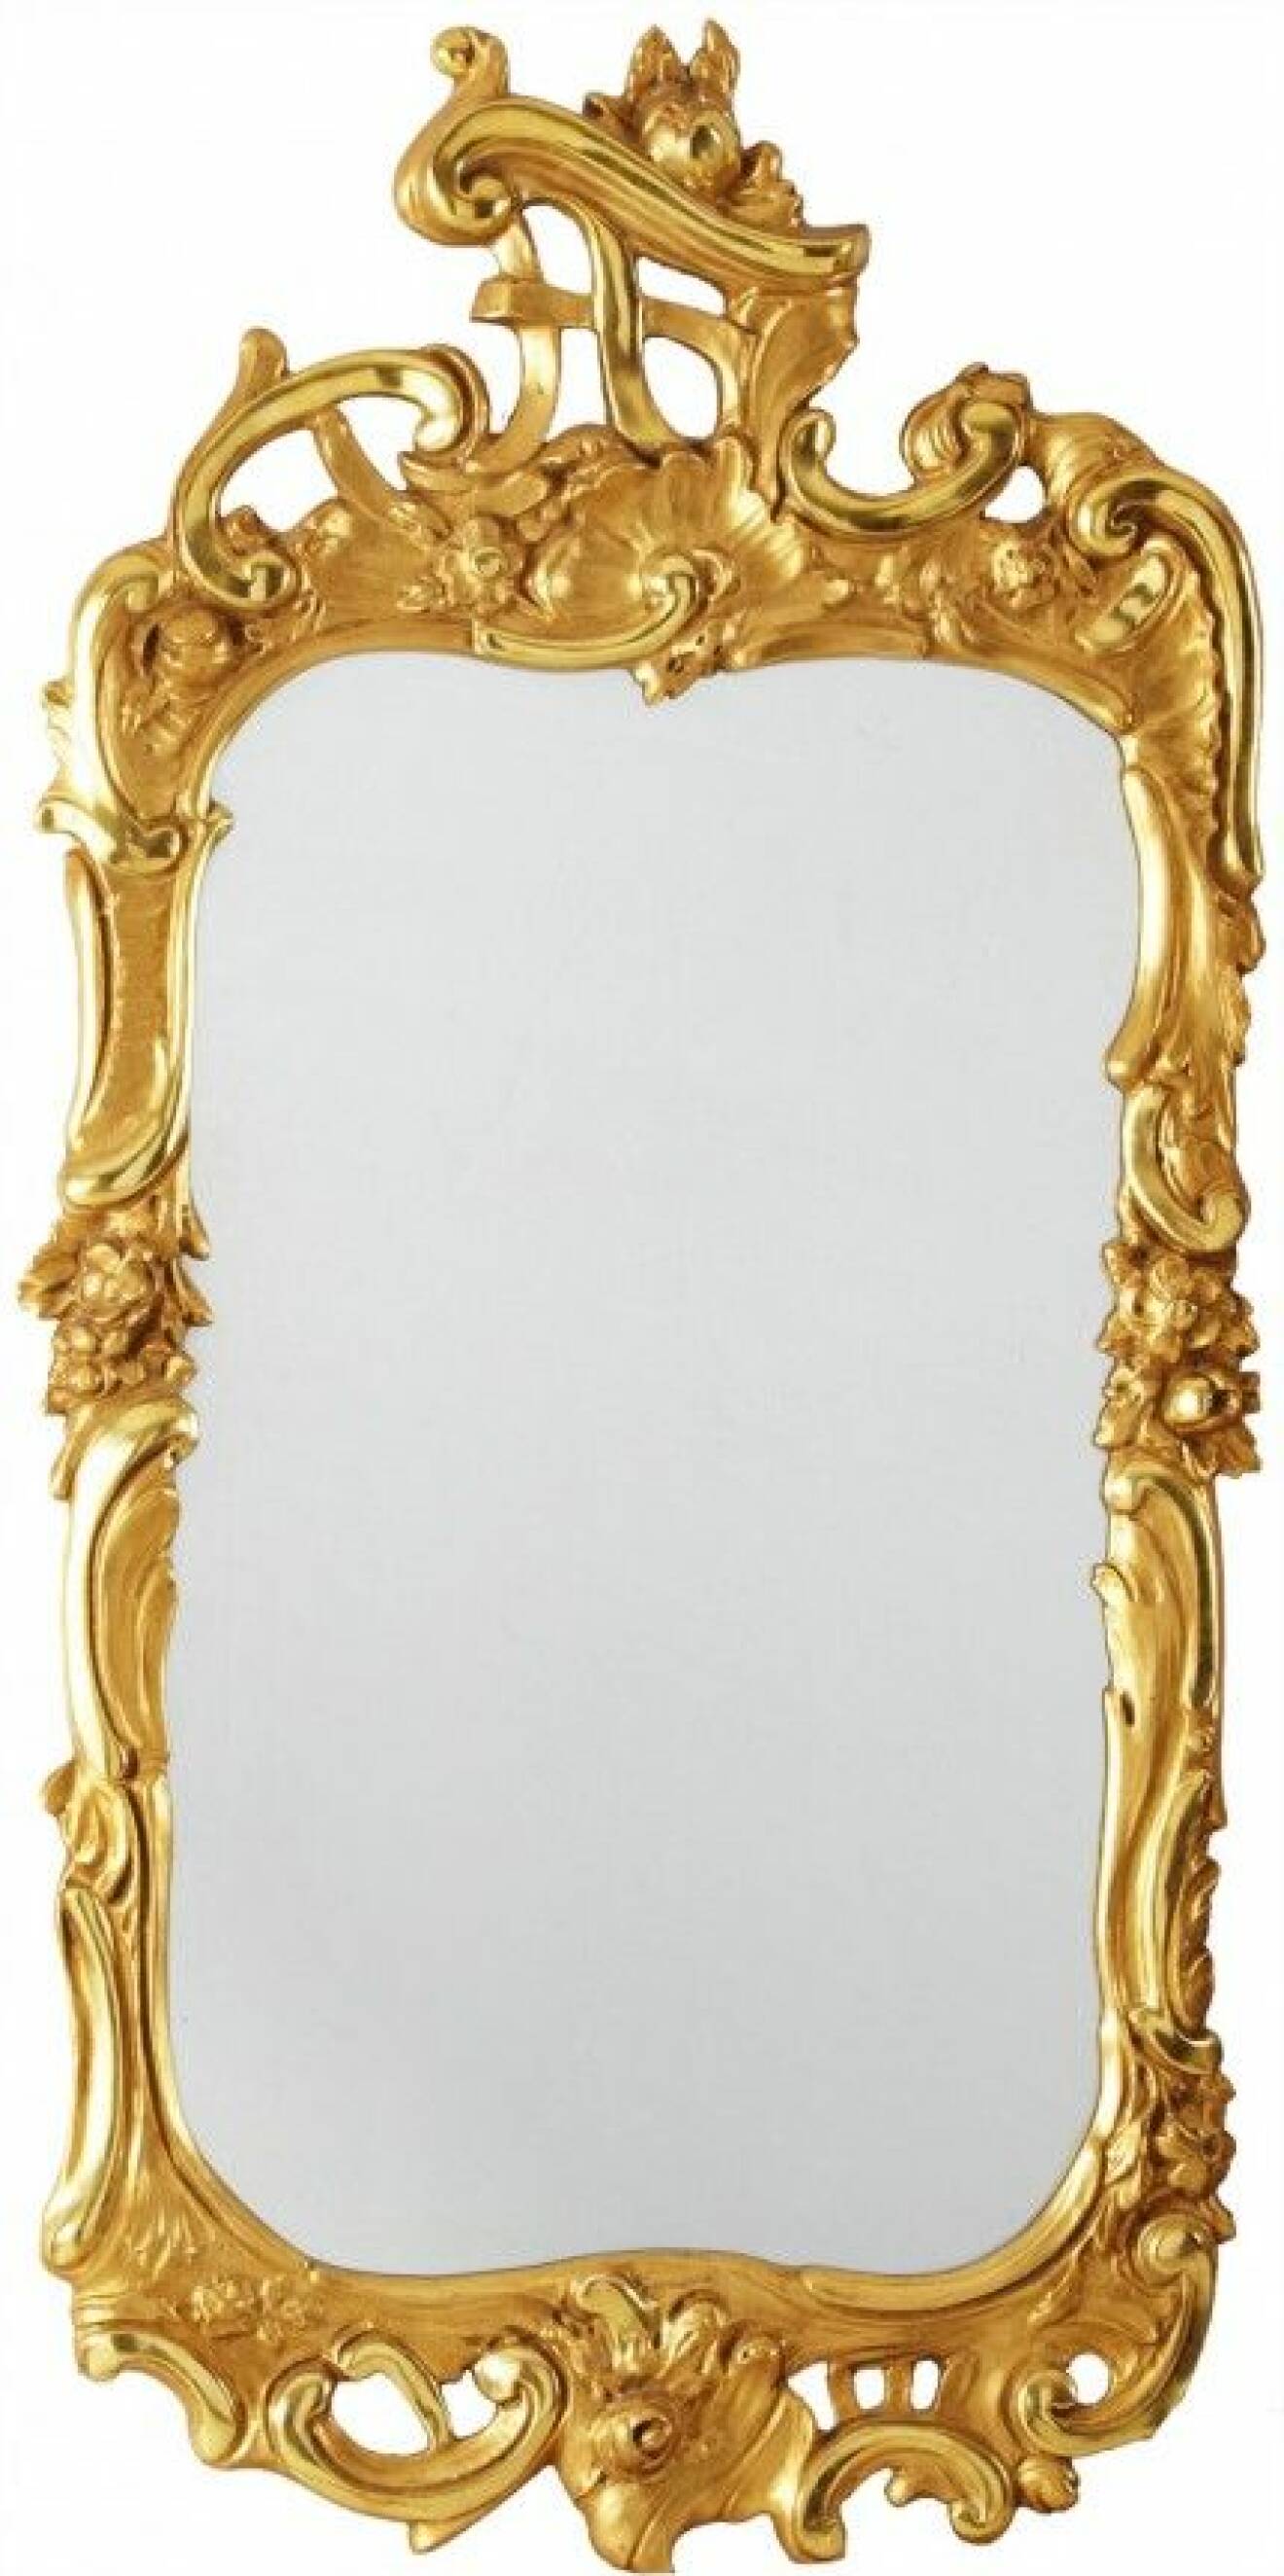 Det senaste året har speglar varit i fokus i inredningsvärlden. Stora och små speglar, för väggen eller på bordet, få eller många tillsammans – det har visats speglar i alla former. Den allra mest personliga spegelväggen får man med en grupp antika eller halvgamla speglar med maffiga guldramar.